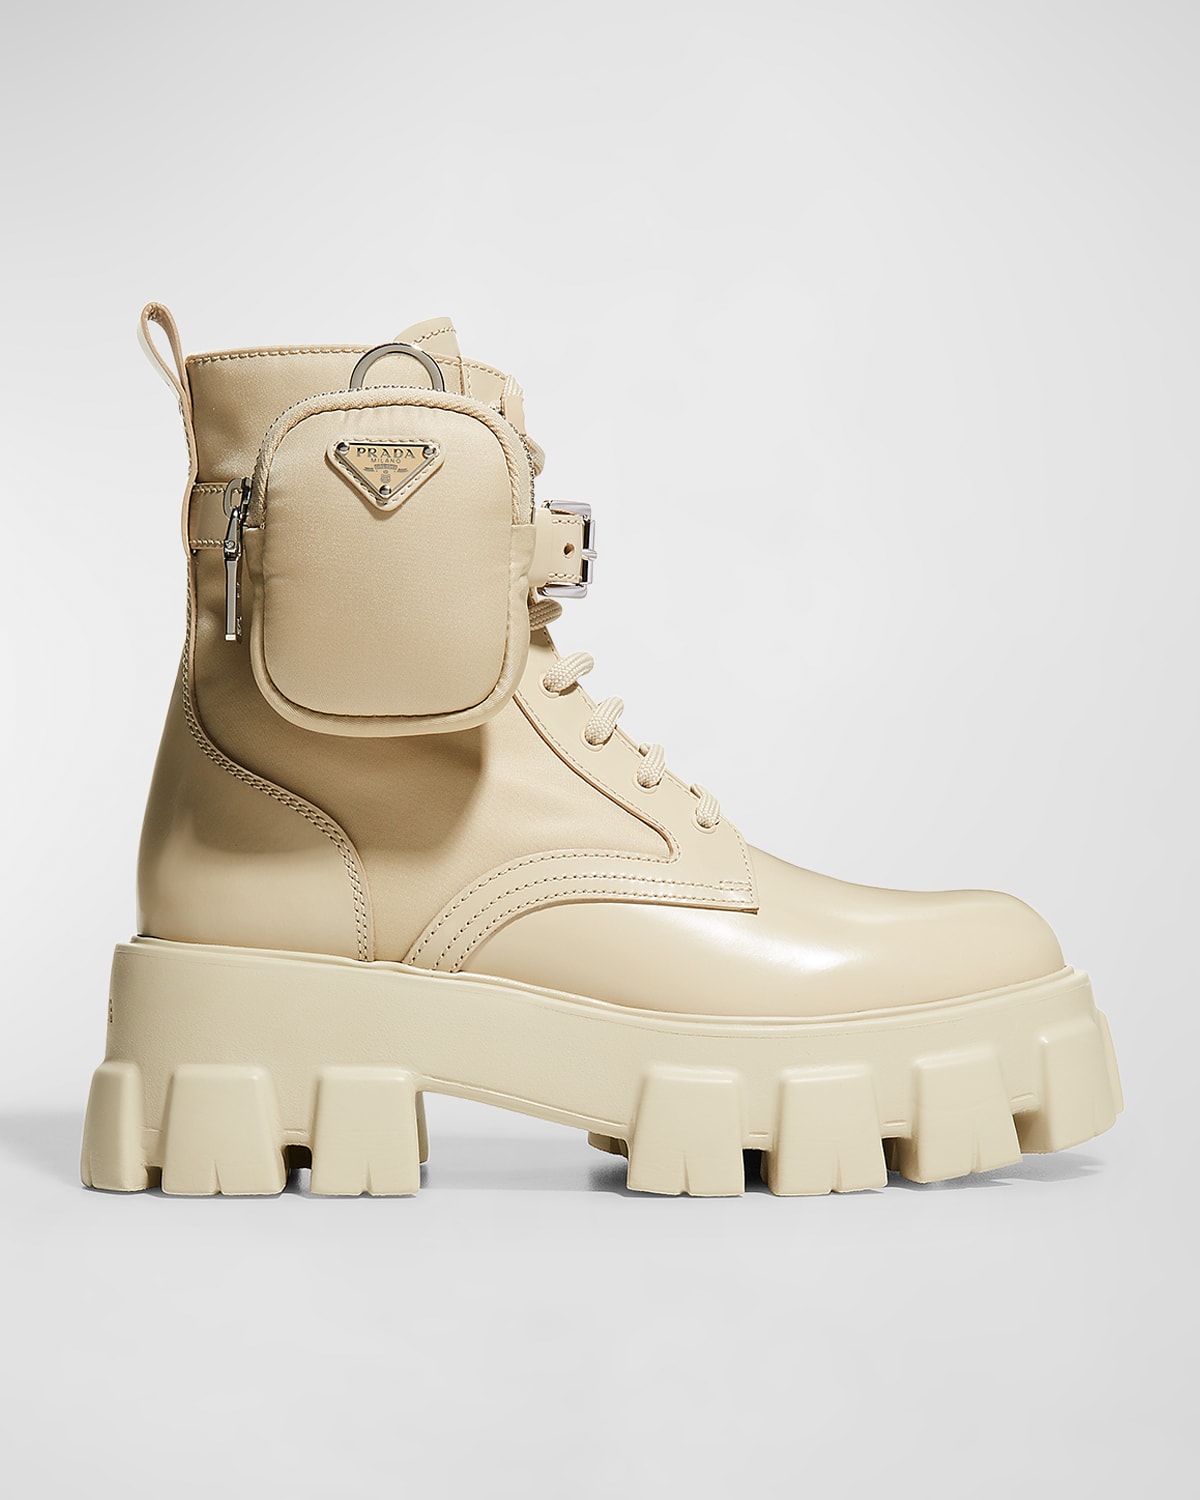 Designer Prada Boots | Neiman Marcus